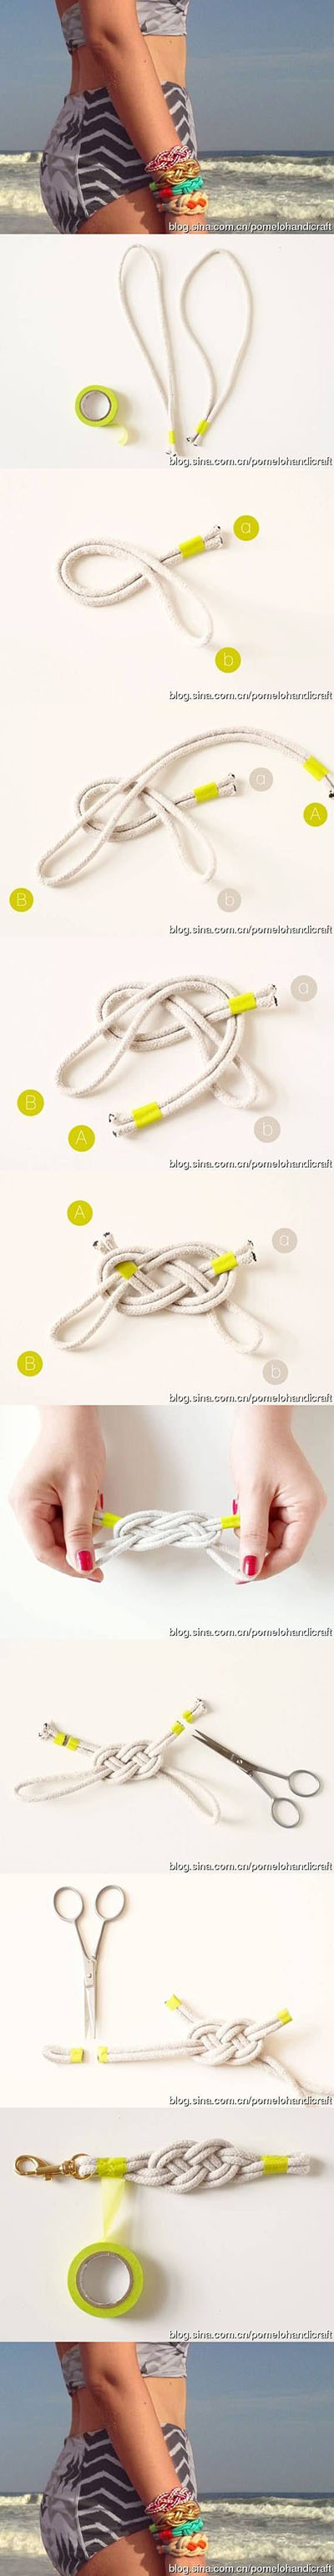 14 DIY Knot Bracelets bd417d12